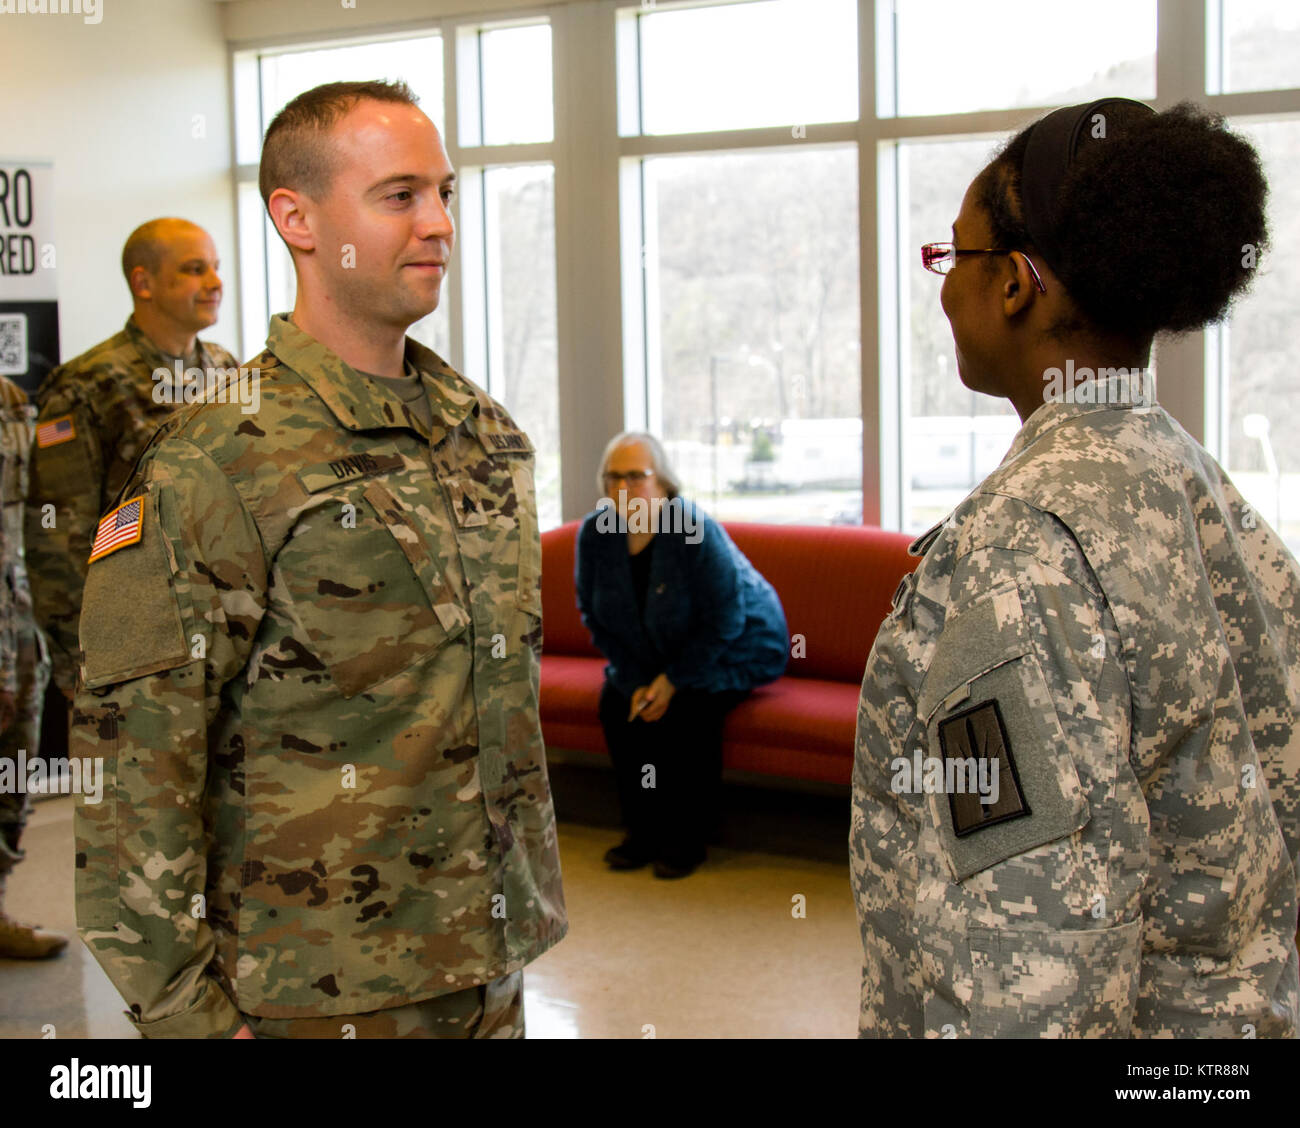 Le s.. Michael Davis, 138e Détachement des affaires publiques, est promu au Camp Smith, N.Y., le 4 décembre 2016. (U.S. La Garde nationale de l'armée photo par le Sgt. Harley Jelis) Banque D'Images